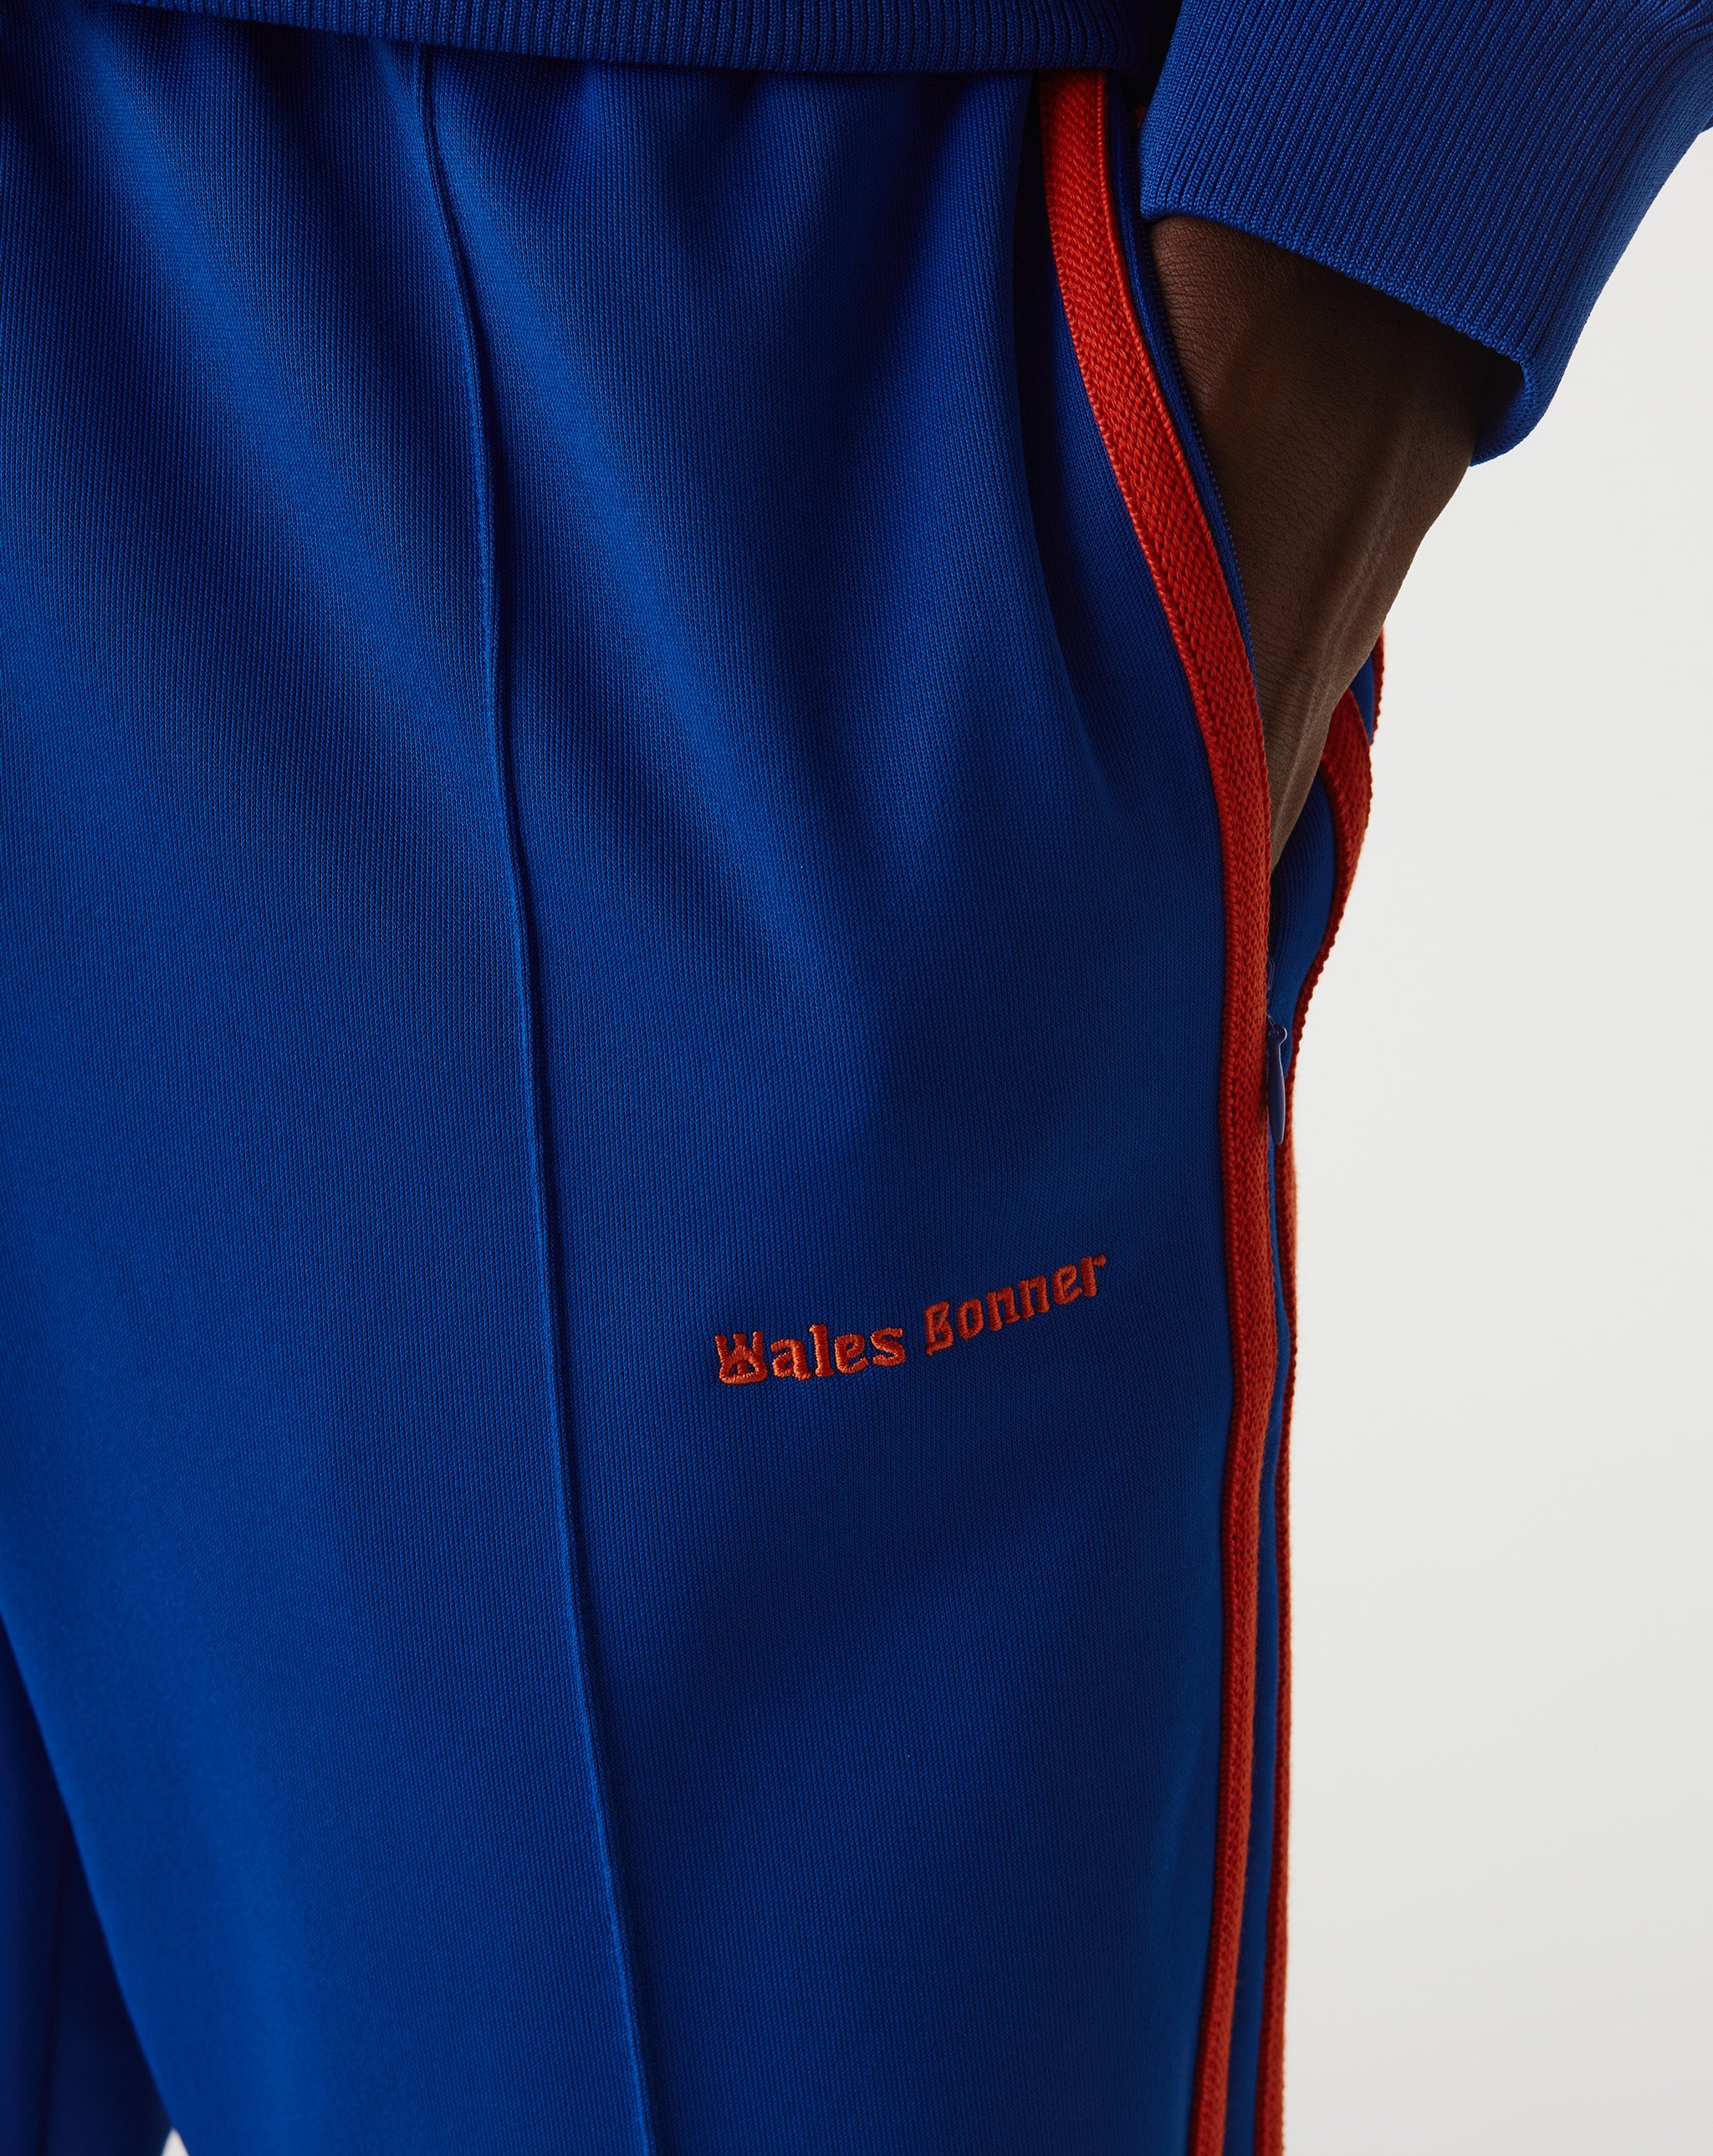 adidas Wales Bonner x Crochet Shorts  - Cheap Urlfreeze Jordan outlet